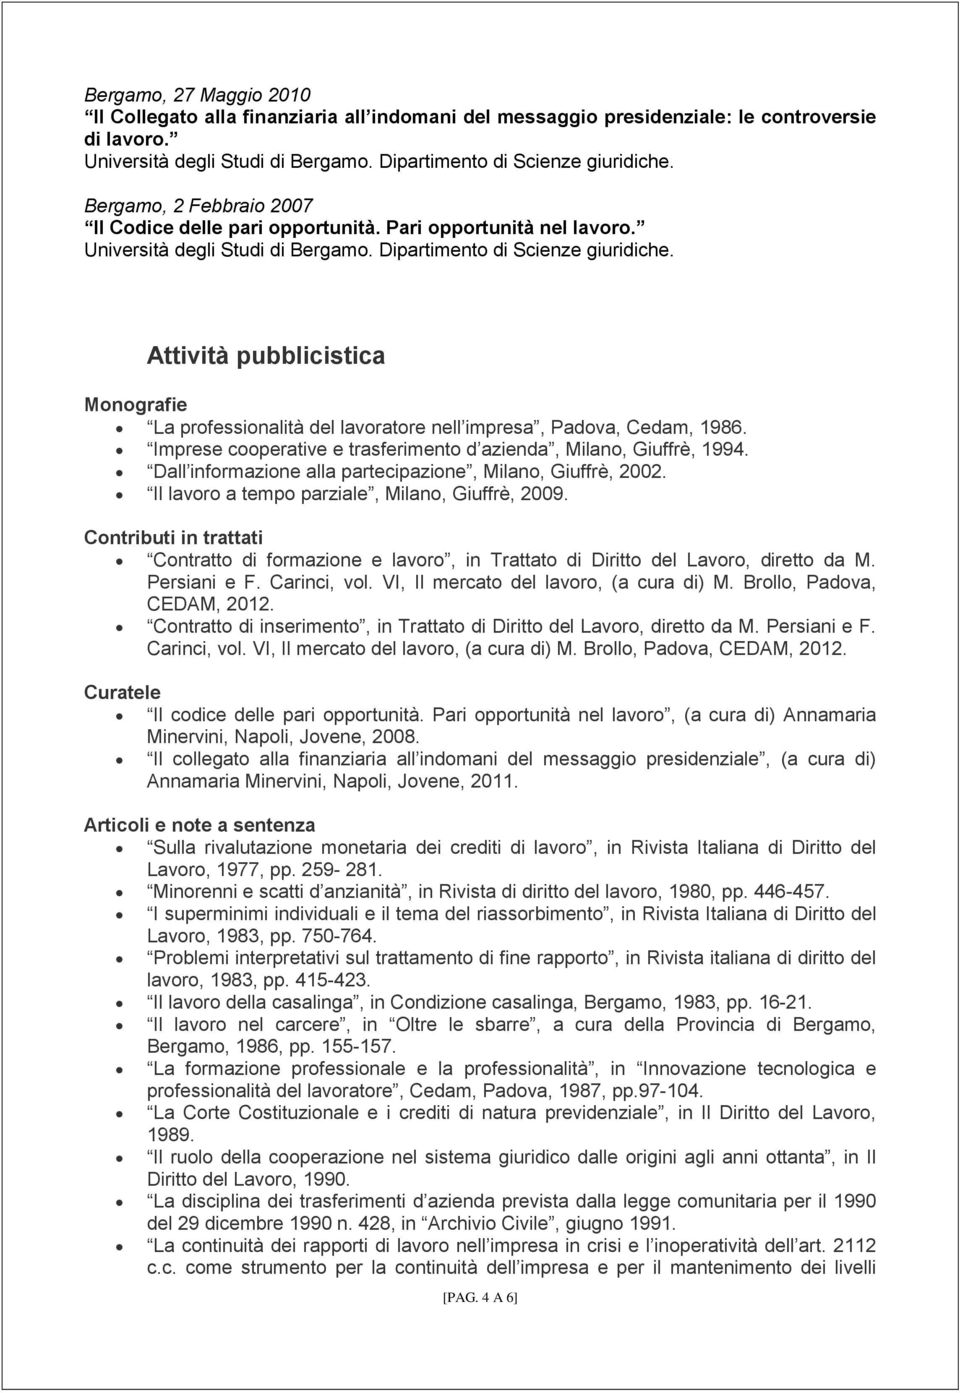 Imprese cooperative e trasferimento d azienda, Milano, Giuffrè, 1994. Dall informazione alla partecipazione, Milano, Giuffrè, 2002. Il lavoro a tempo parziale, Milano, Giuffrè, 2009.